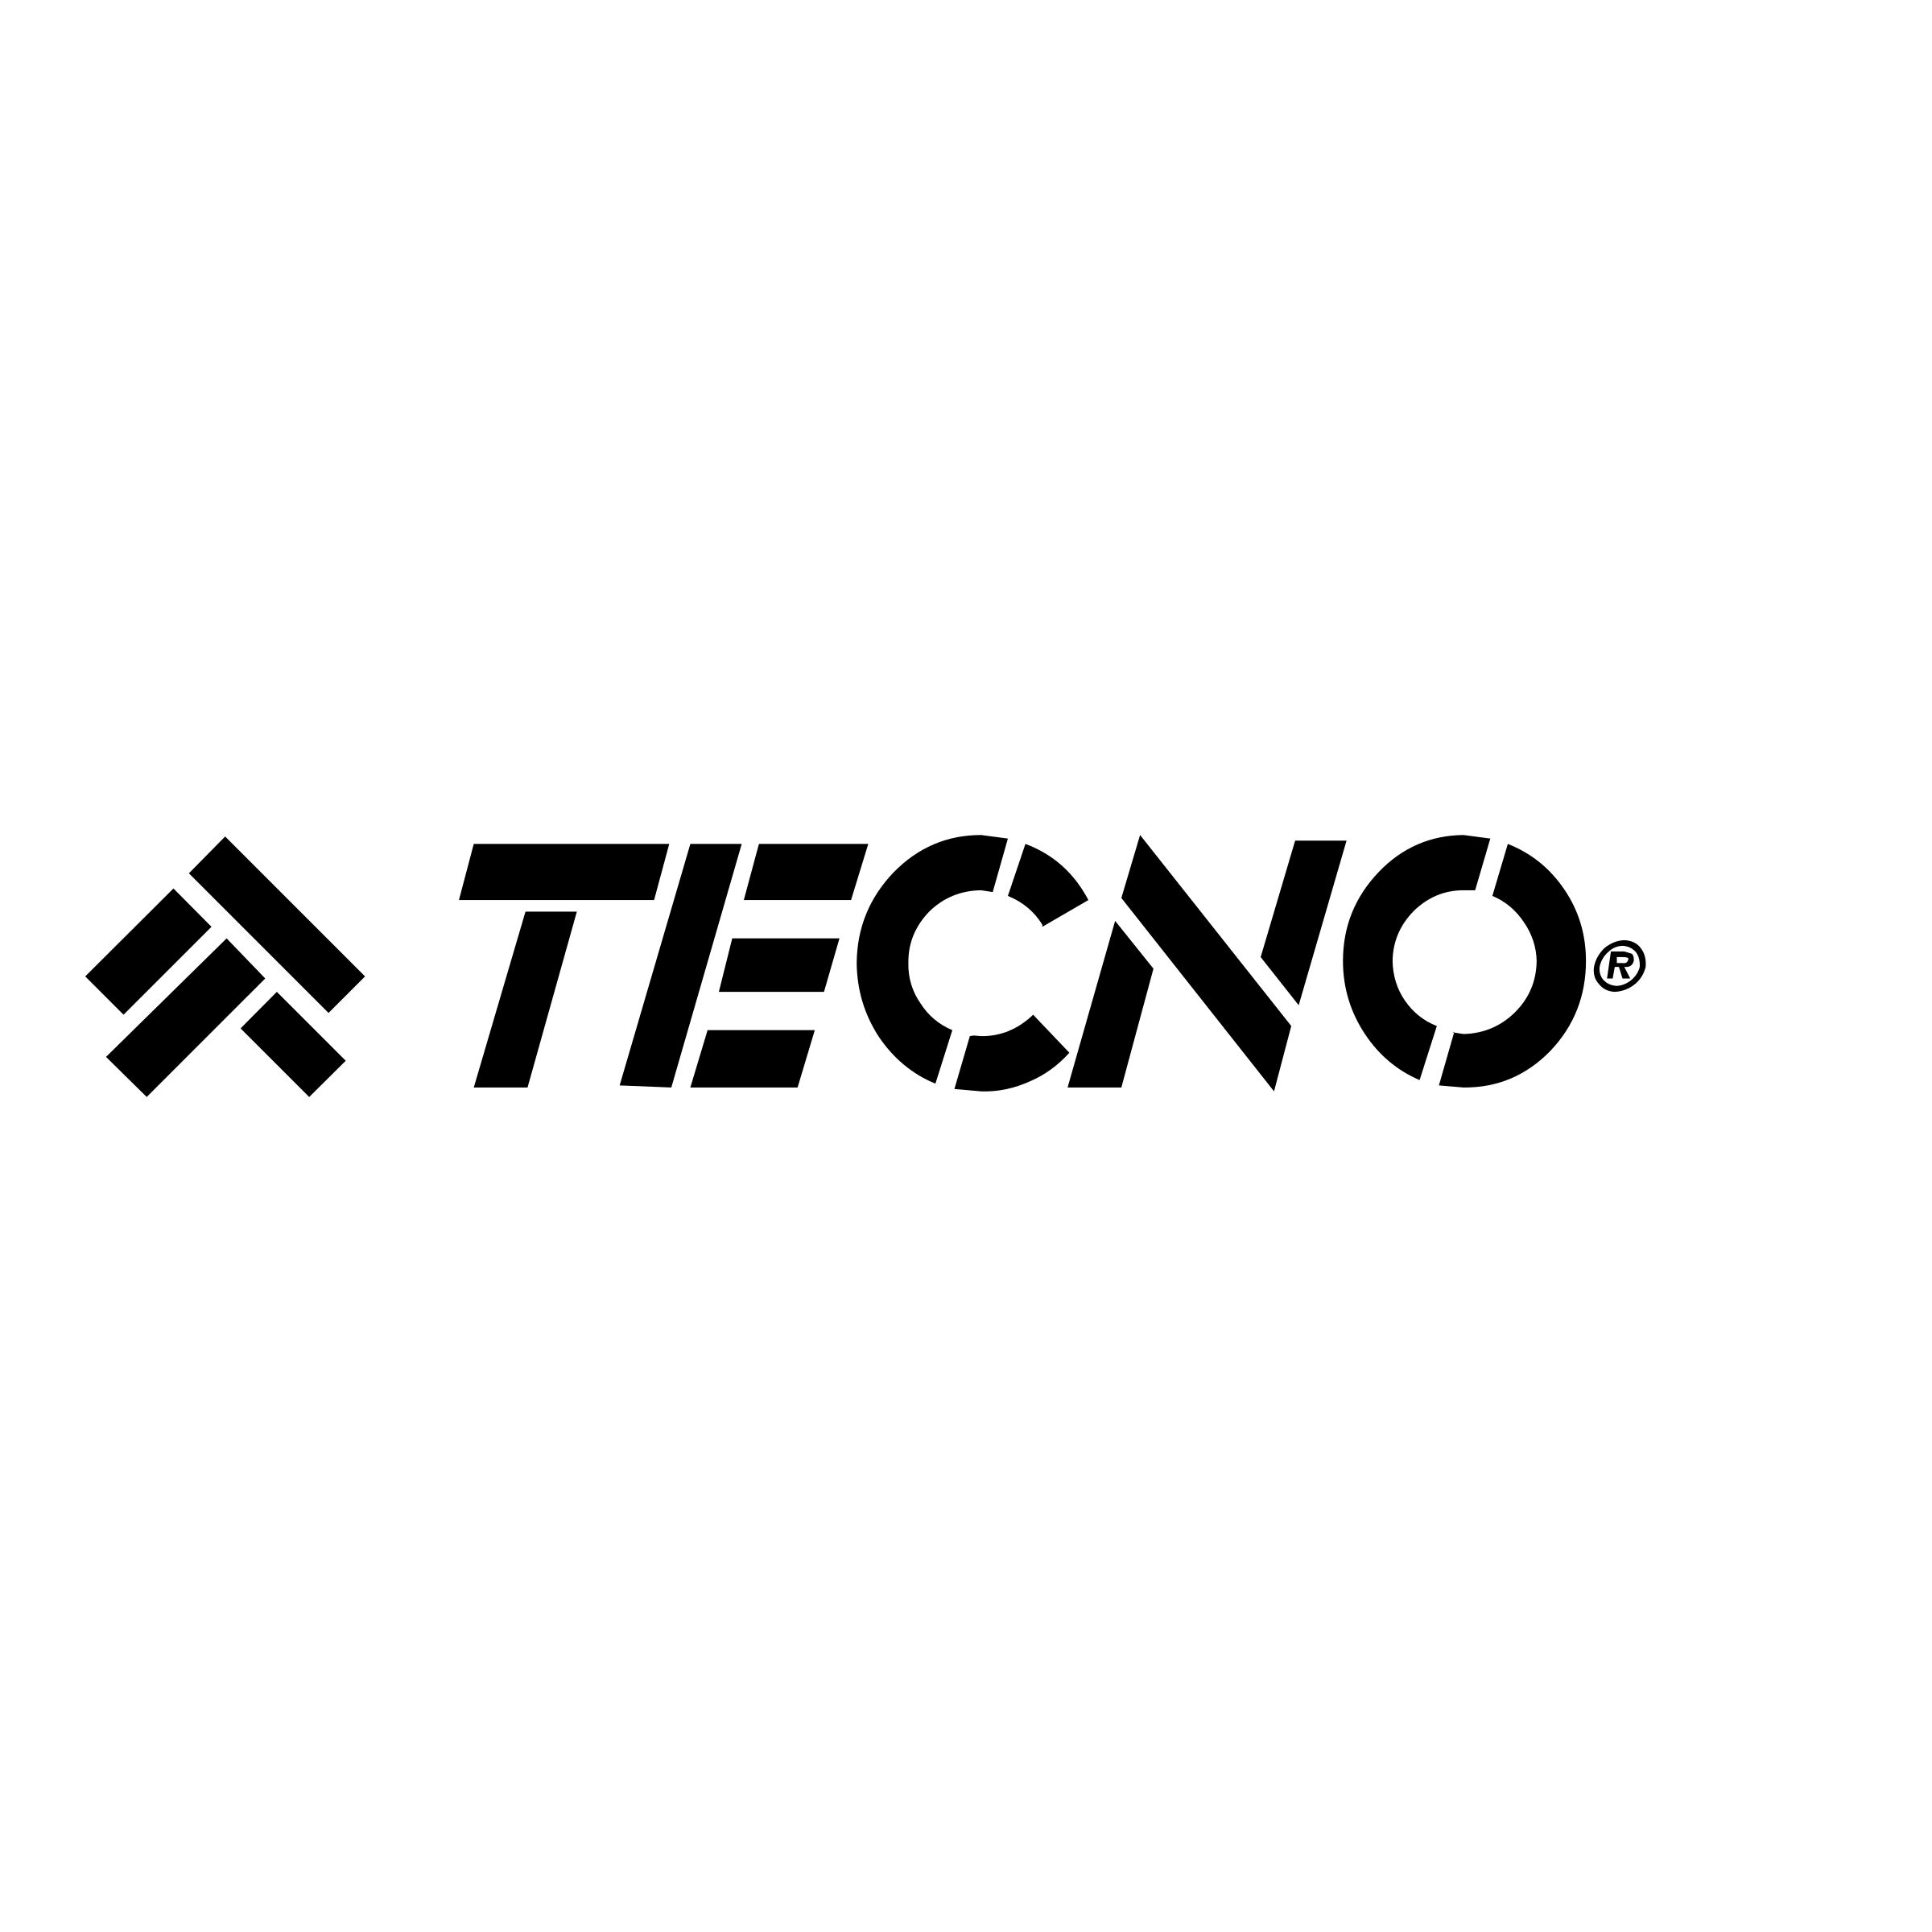 tecno-pro-logo-black-and-white